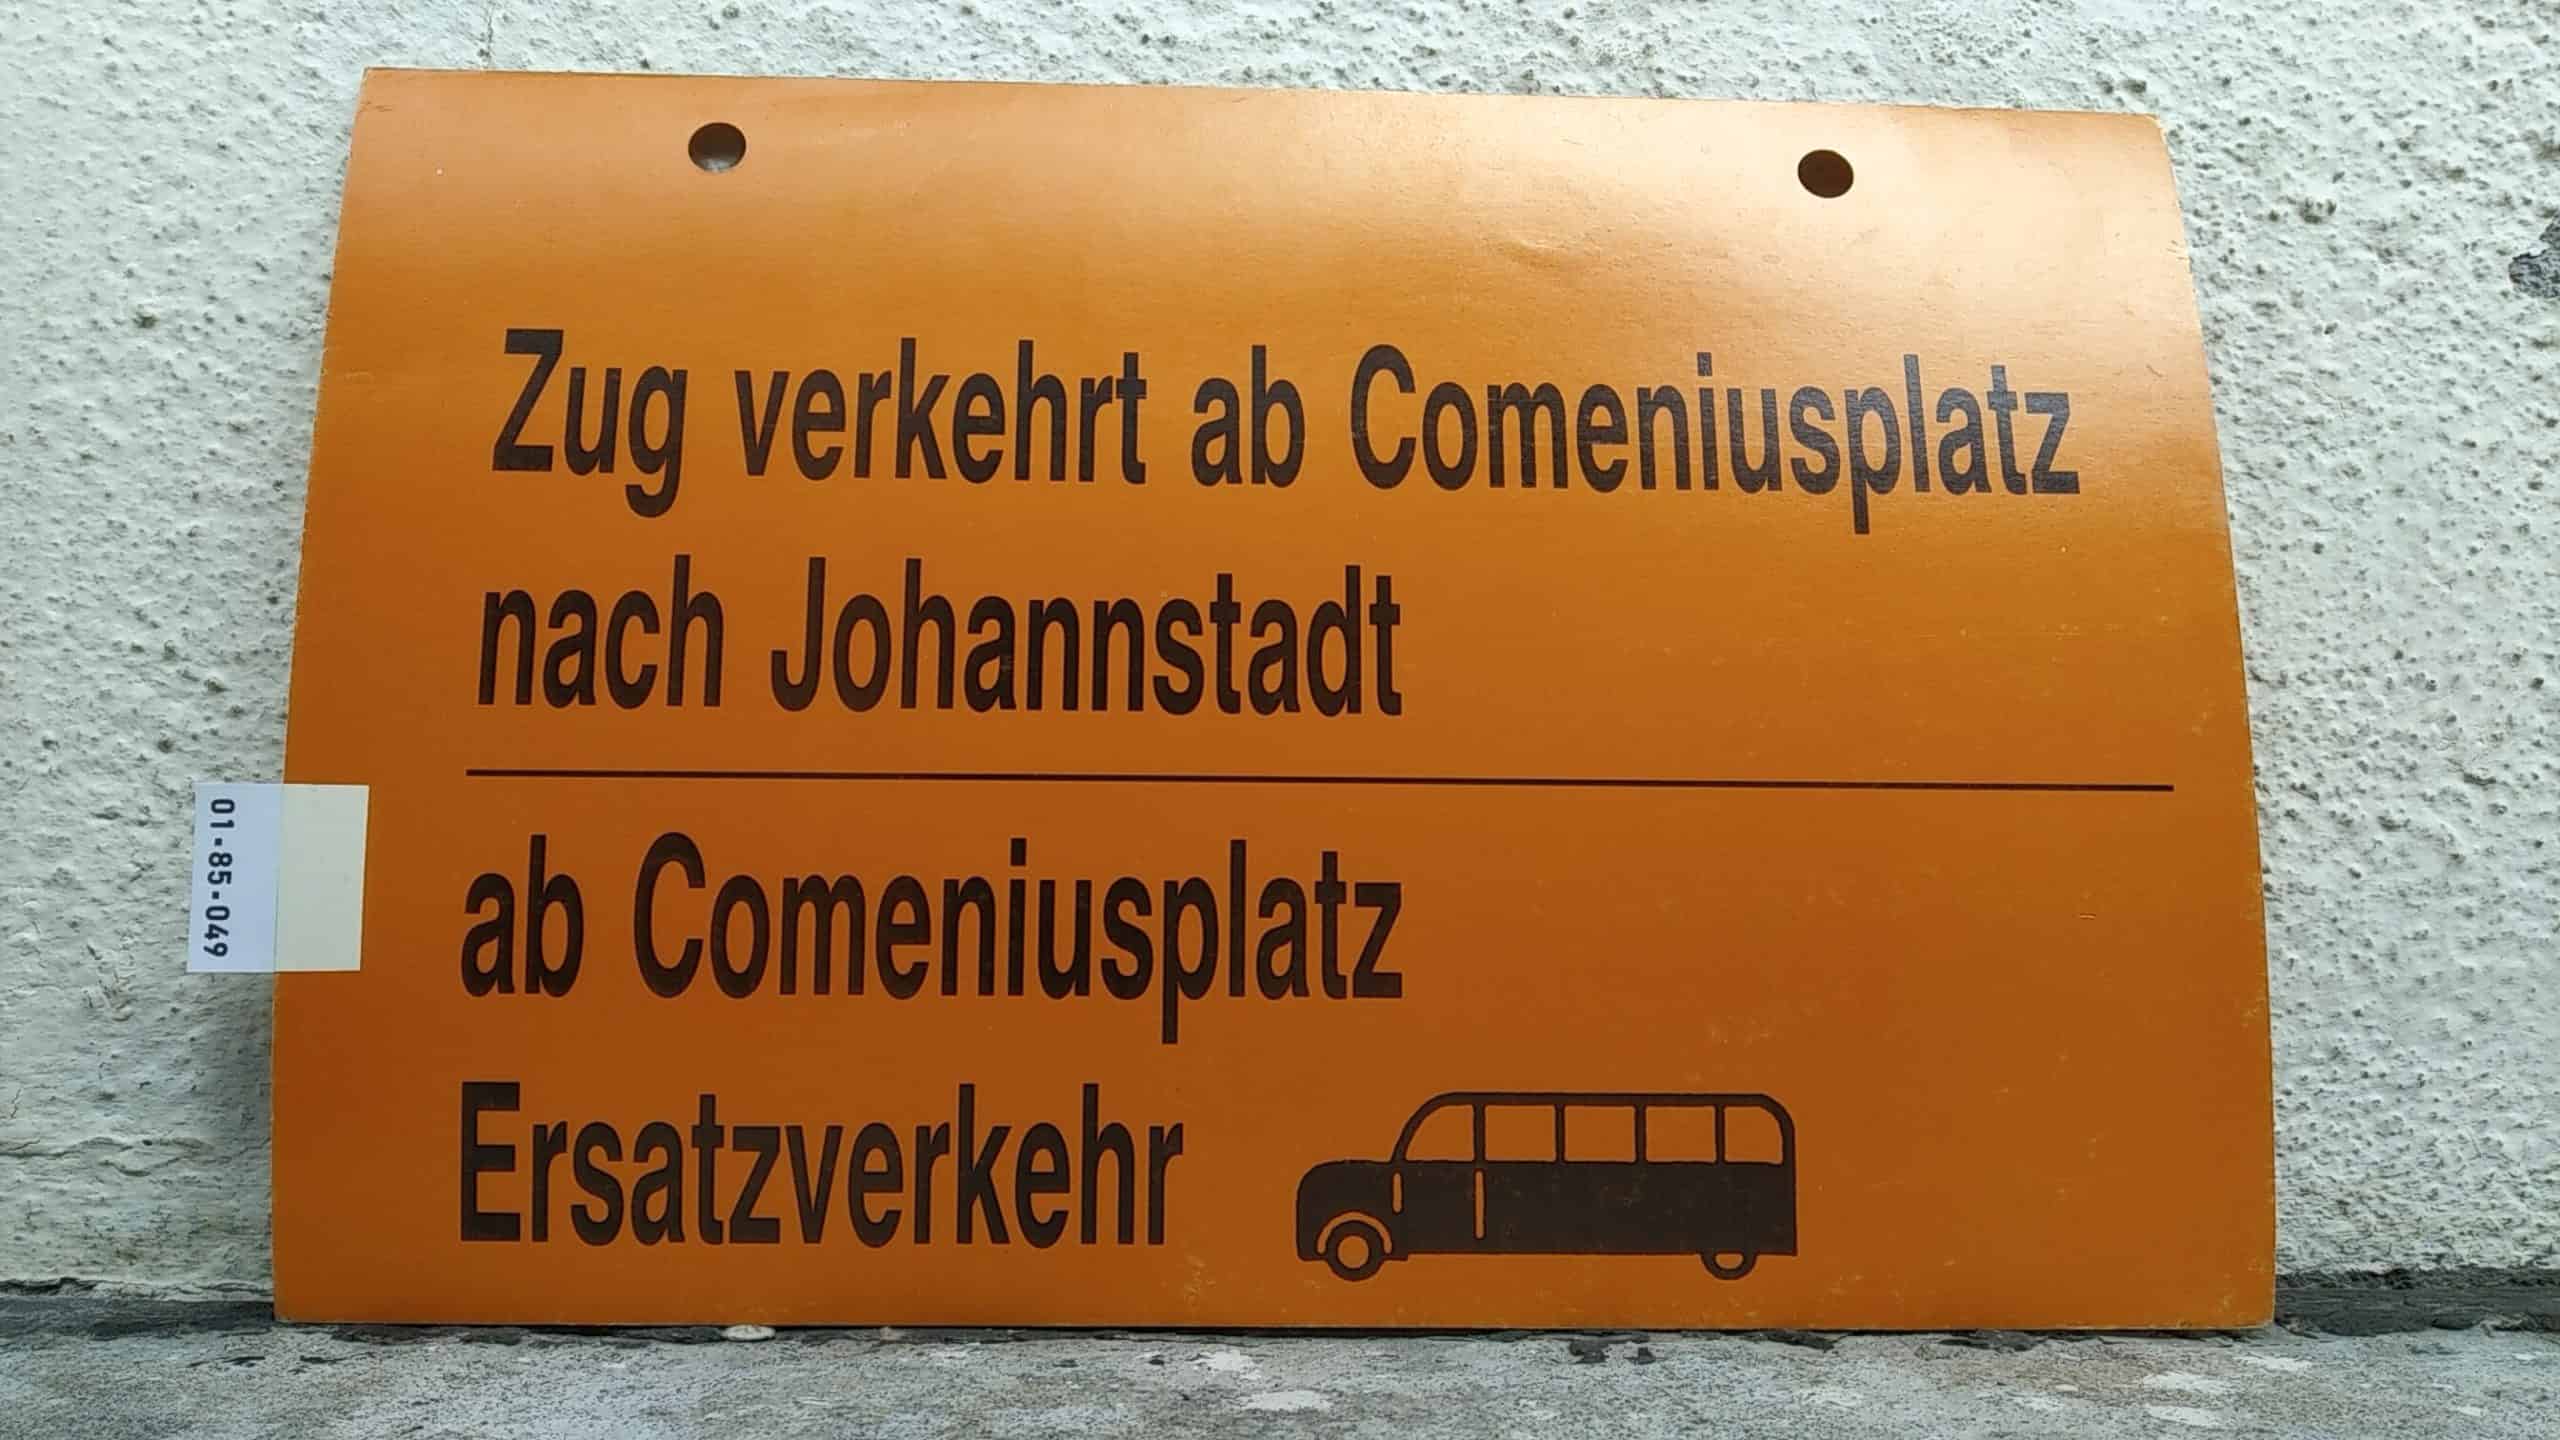 Ein seltenes Straßenbahn-Umleitungsschild aus Dresden: Zug verkehrt ab Comeniusplatz nach Johannstadt ab Comeniusplatz Ersatzverkehr [Bus alt]